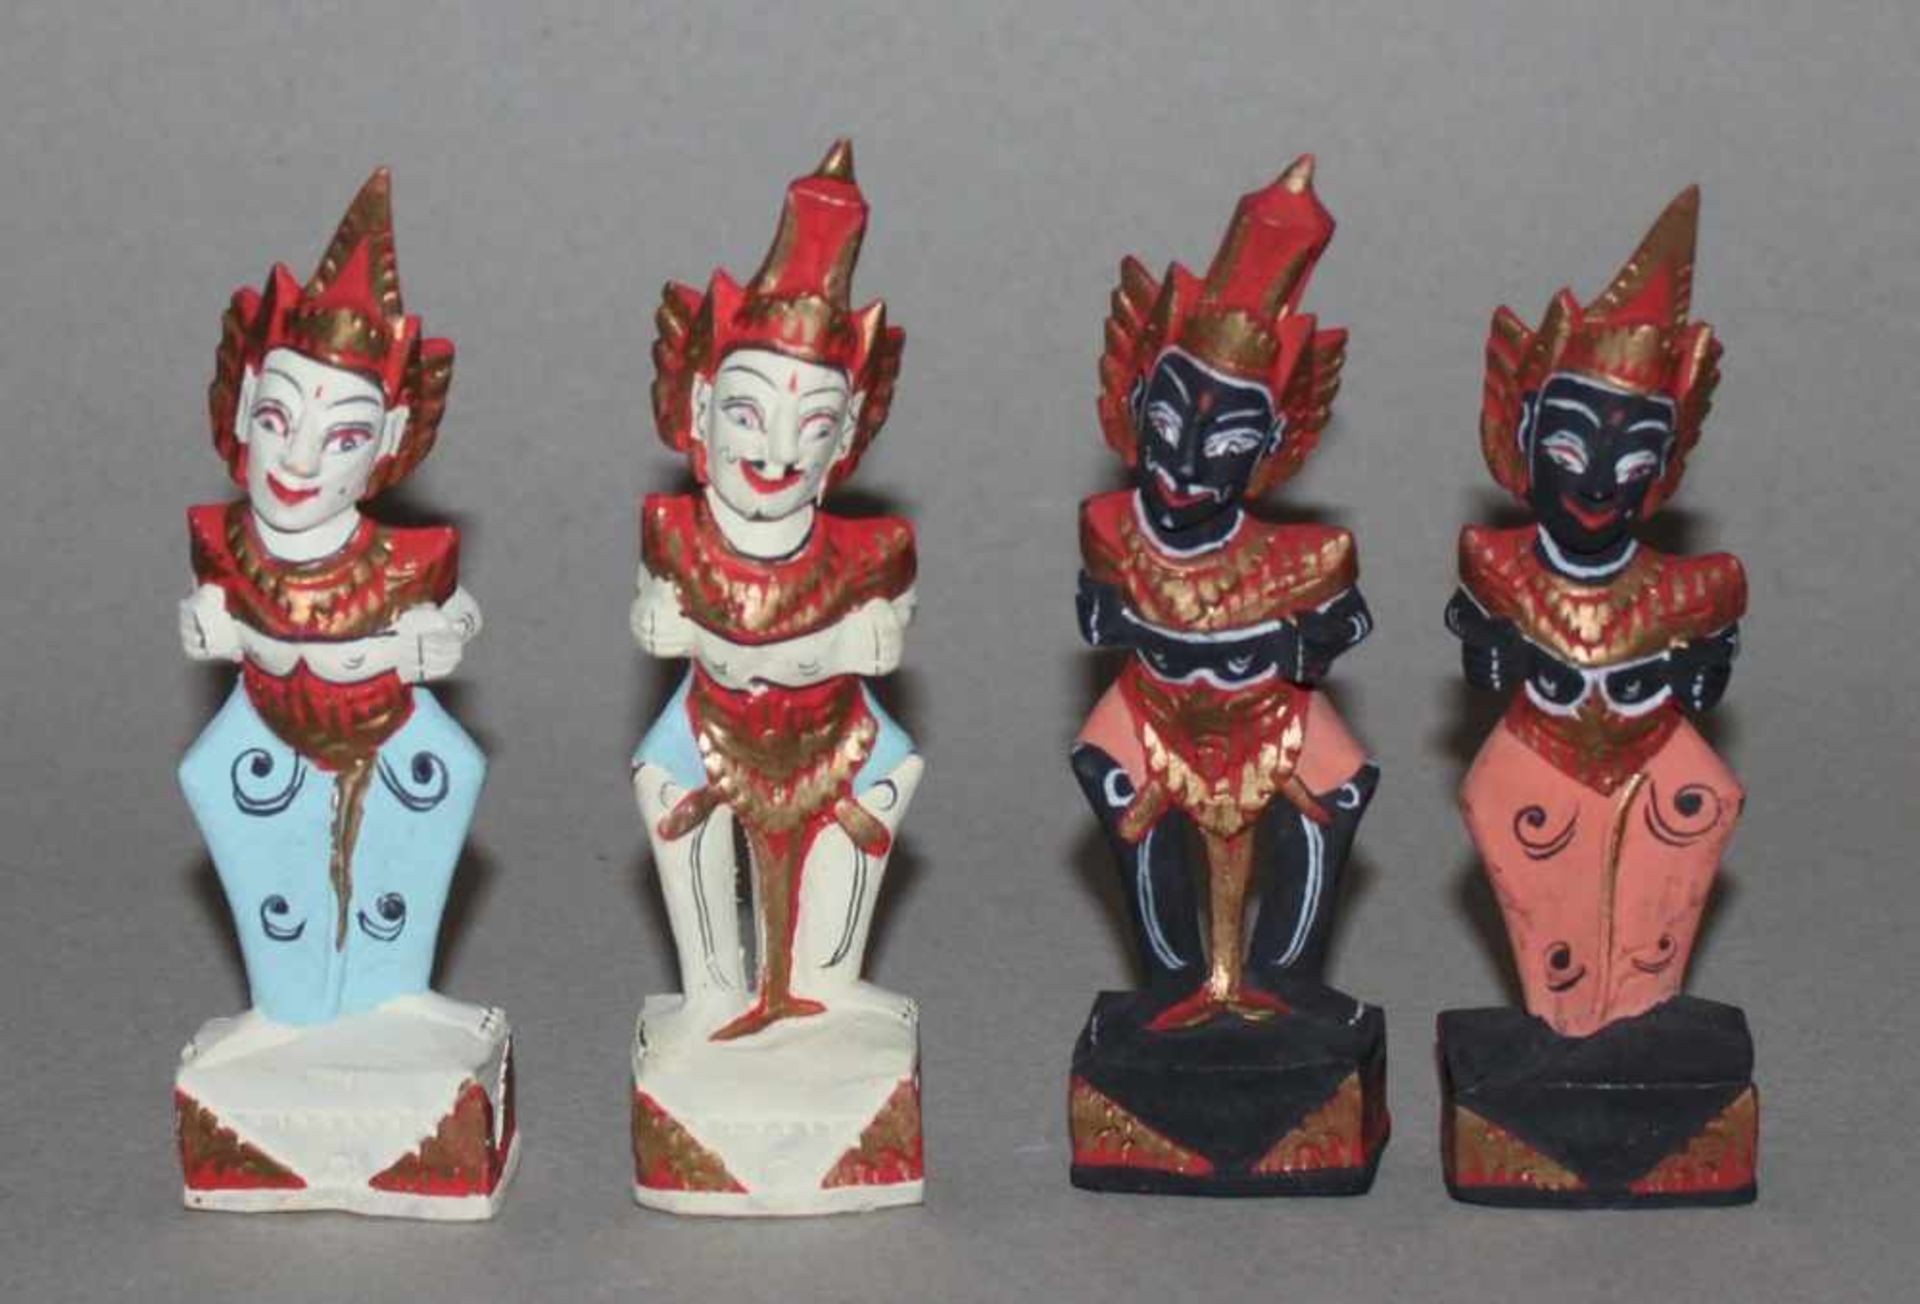 Asien. Indonesien - Bali. Schachfiguren aus leichtem Holz,nach dem Ramayana - Epos. Polychrom